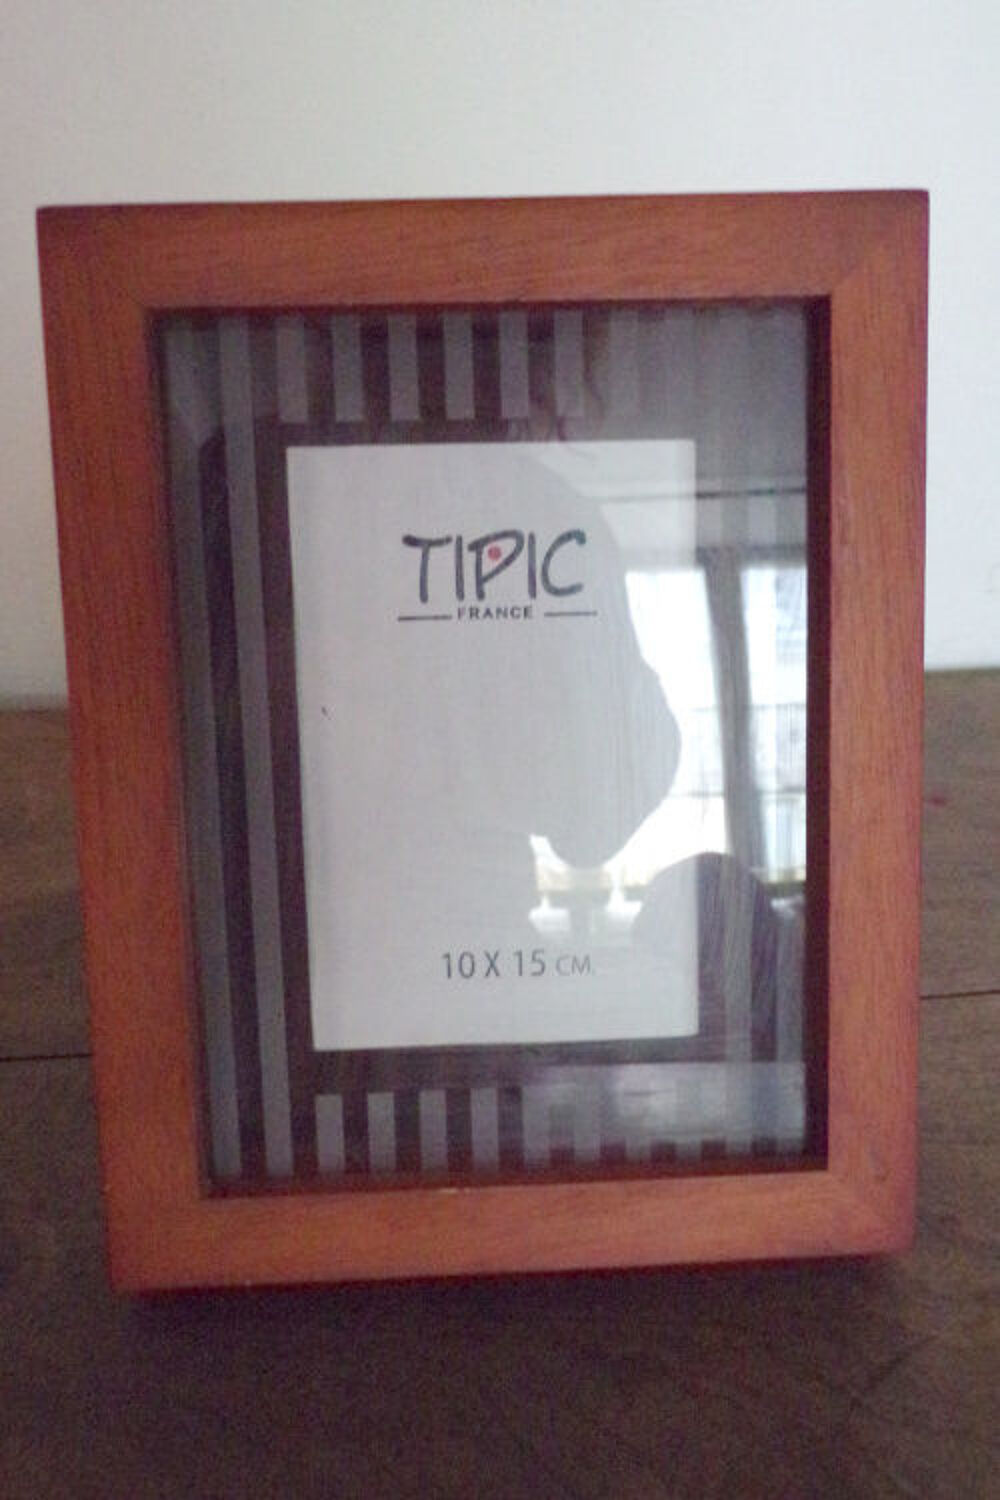 Cadre de bois Tipic marie louise en verre photo 10x15 cm Dcoration